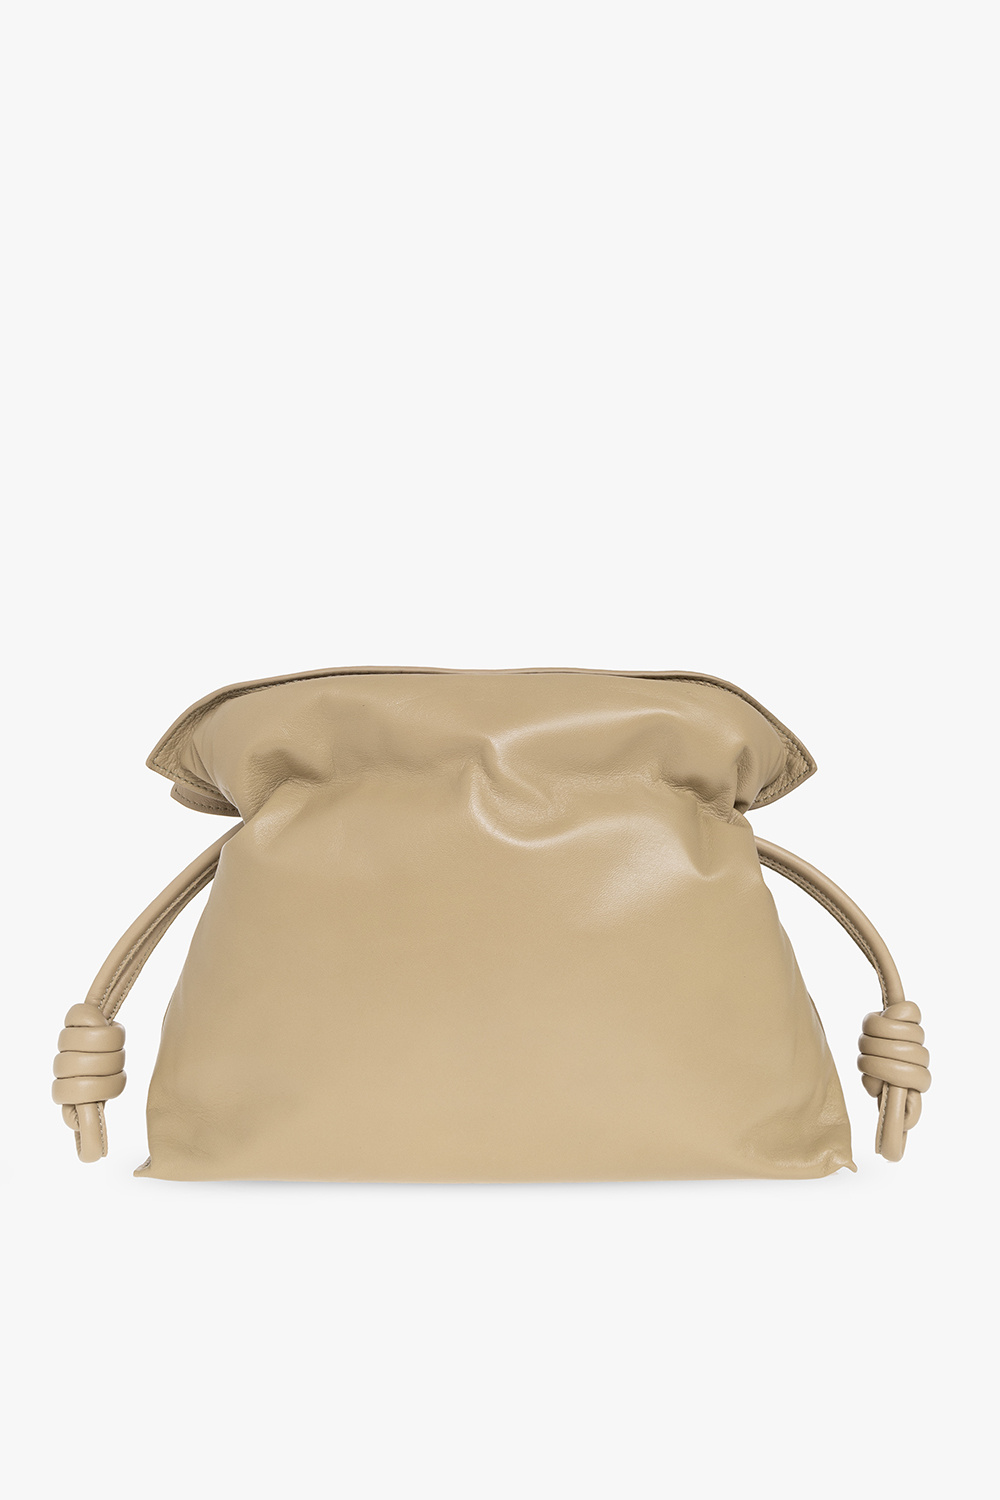 Loewe ‘Flamenco Puffer’ shoulder bag